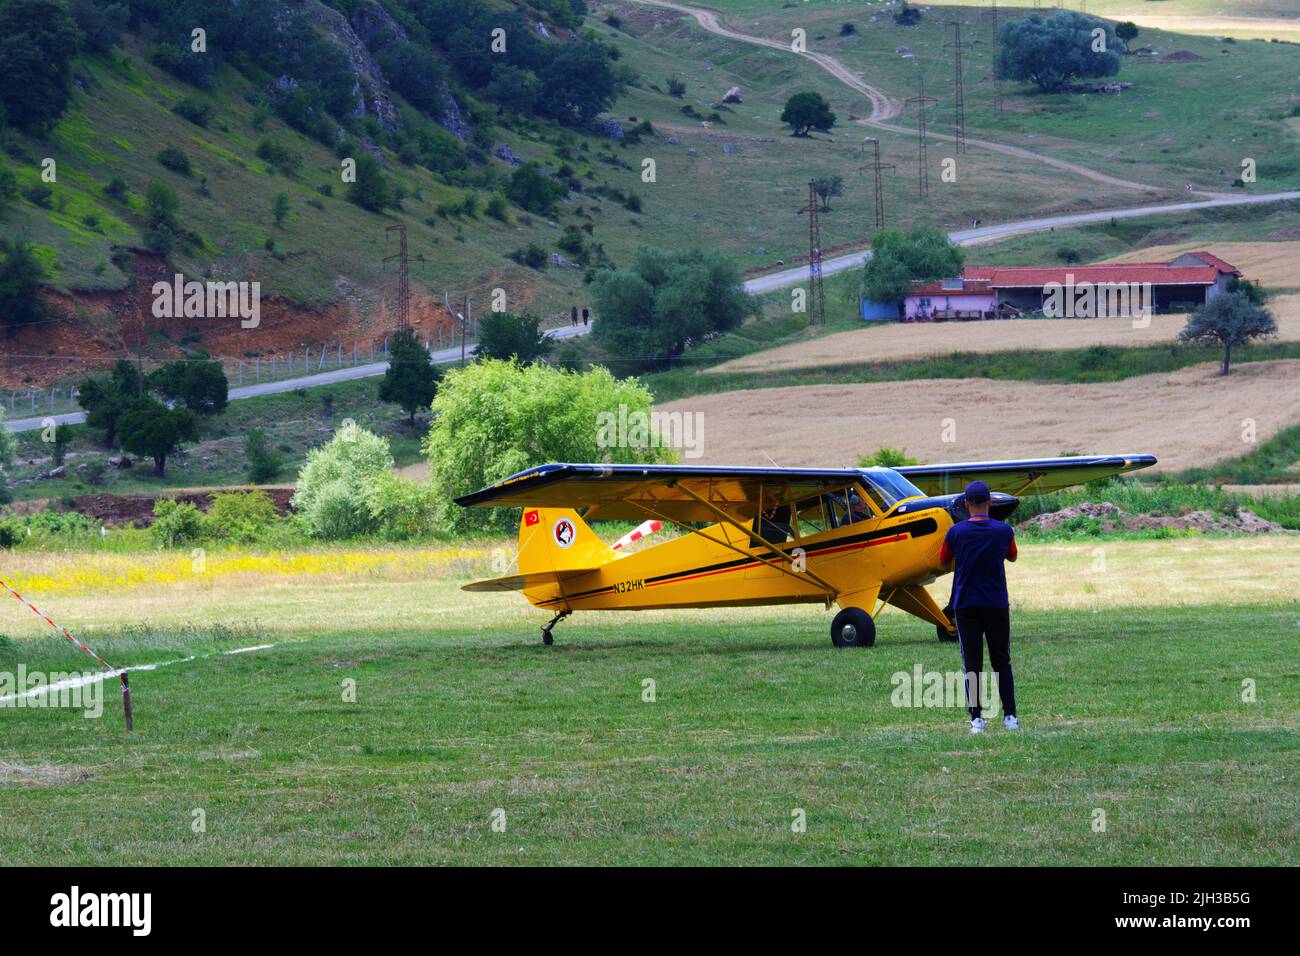 Petit avion jaune d'hélice sur l'herbe à un jour ensoleillé et les gens autour de l'avion Banque D'Images